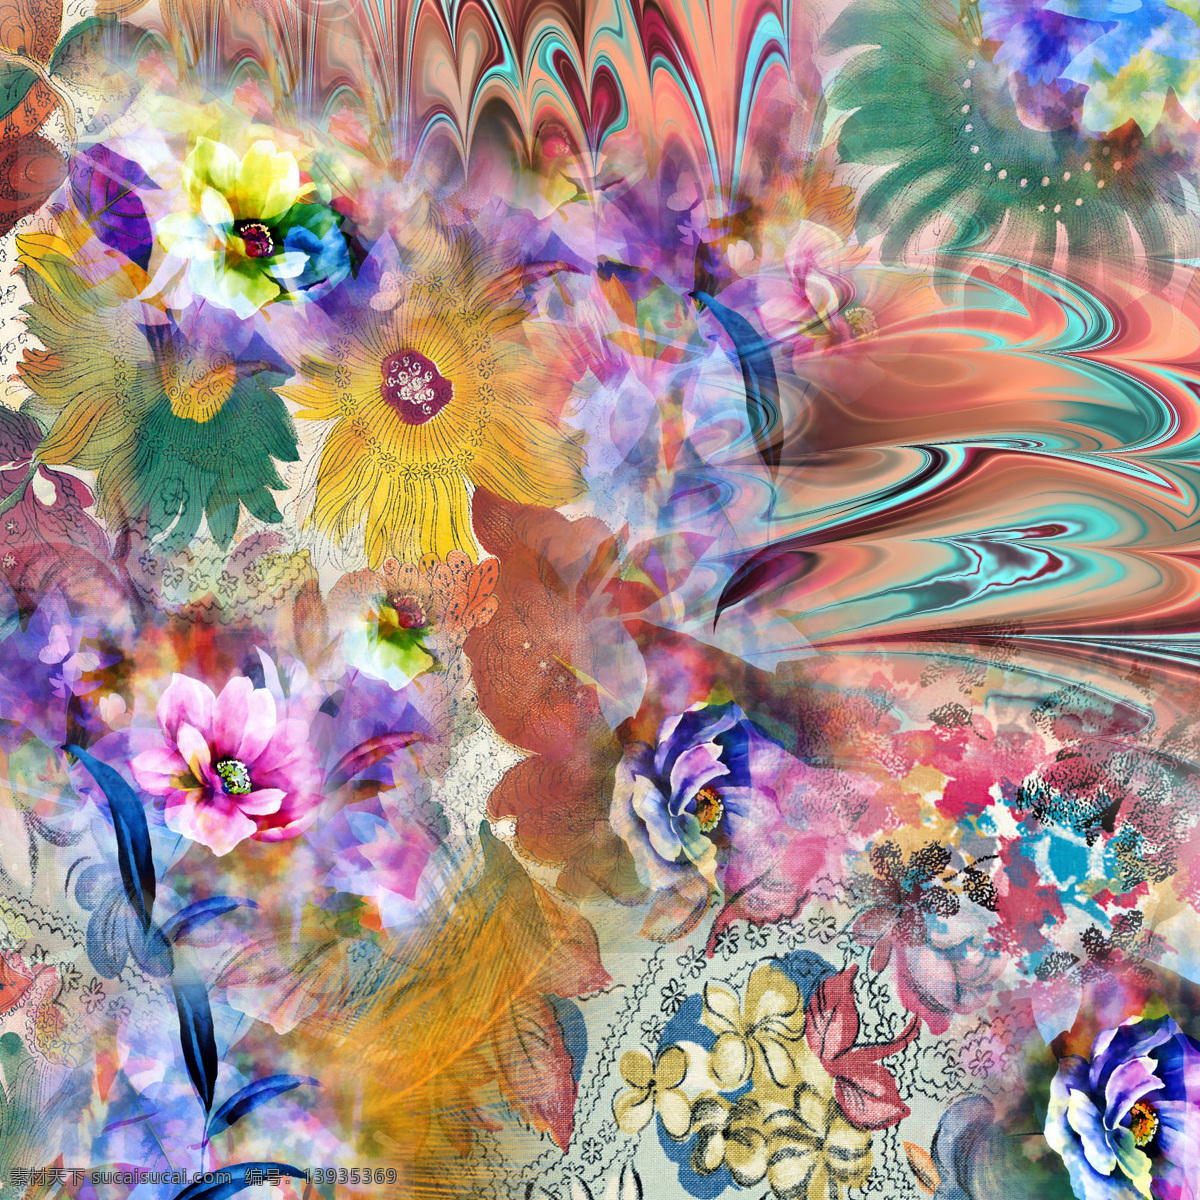 欧美印花手稿 豹纹 花卉 几何 渐变 时尚 花丛 色彩绚丽 装饰 蕾丝 大气 欧式 粗蕾丝 花边花纹 底纹边框